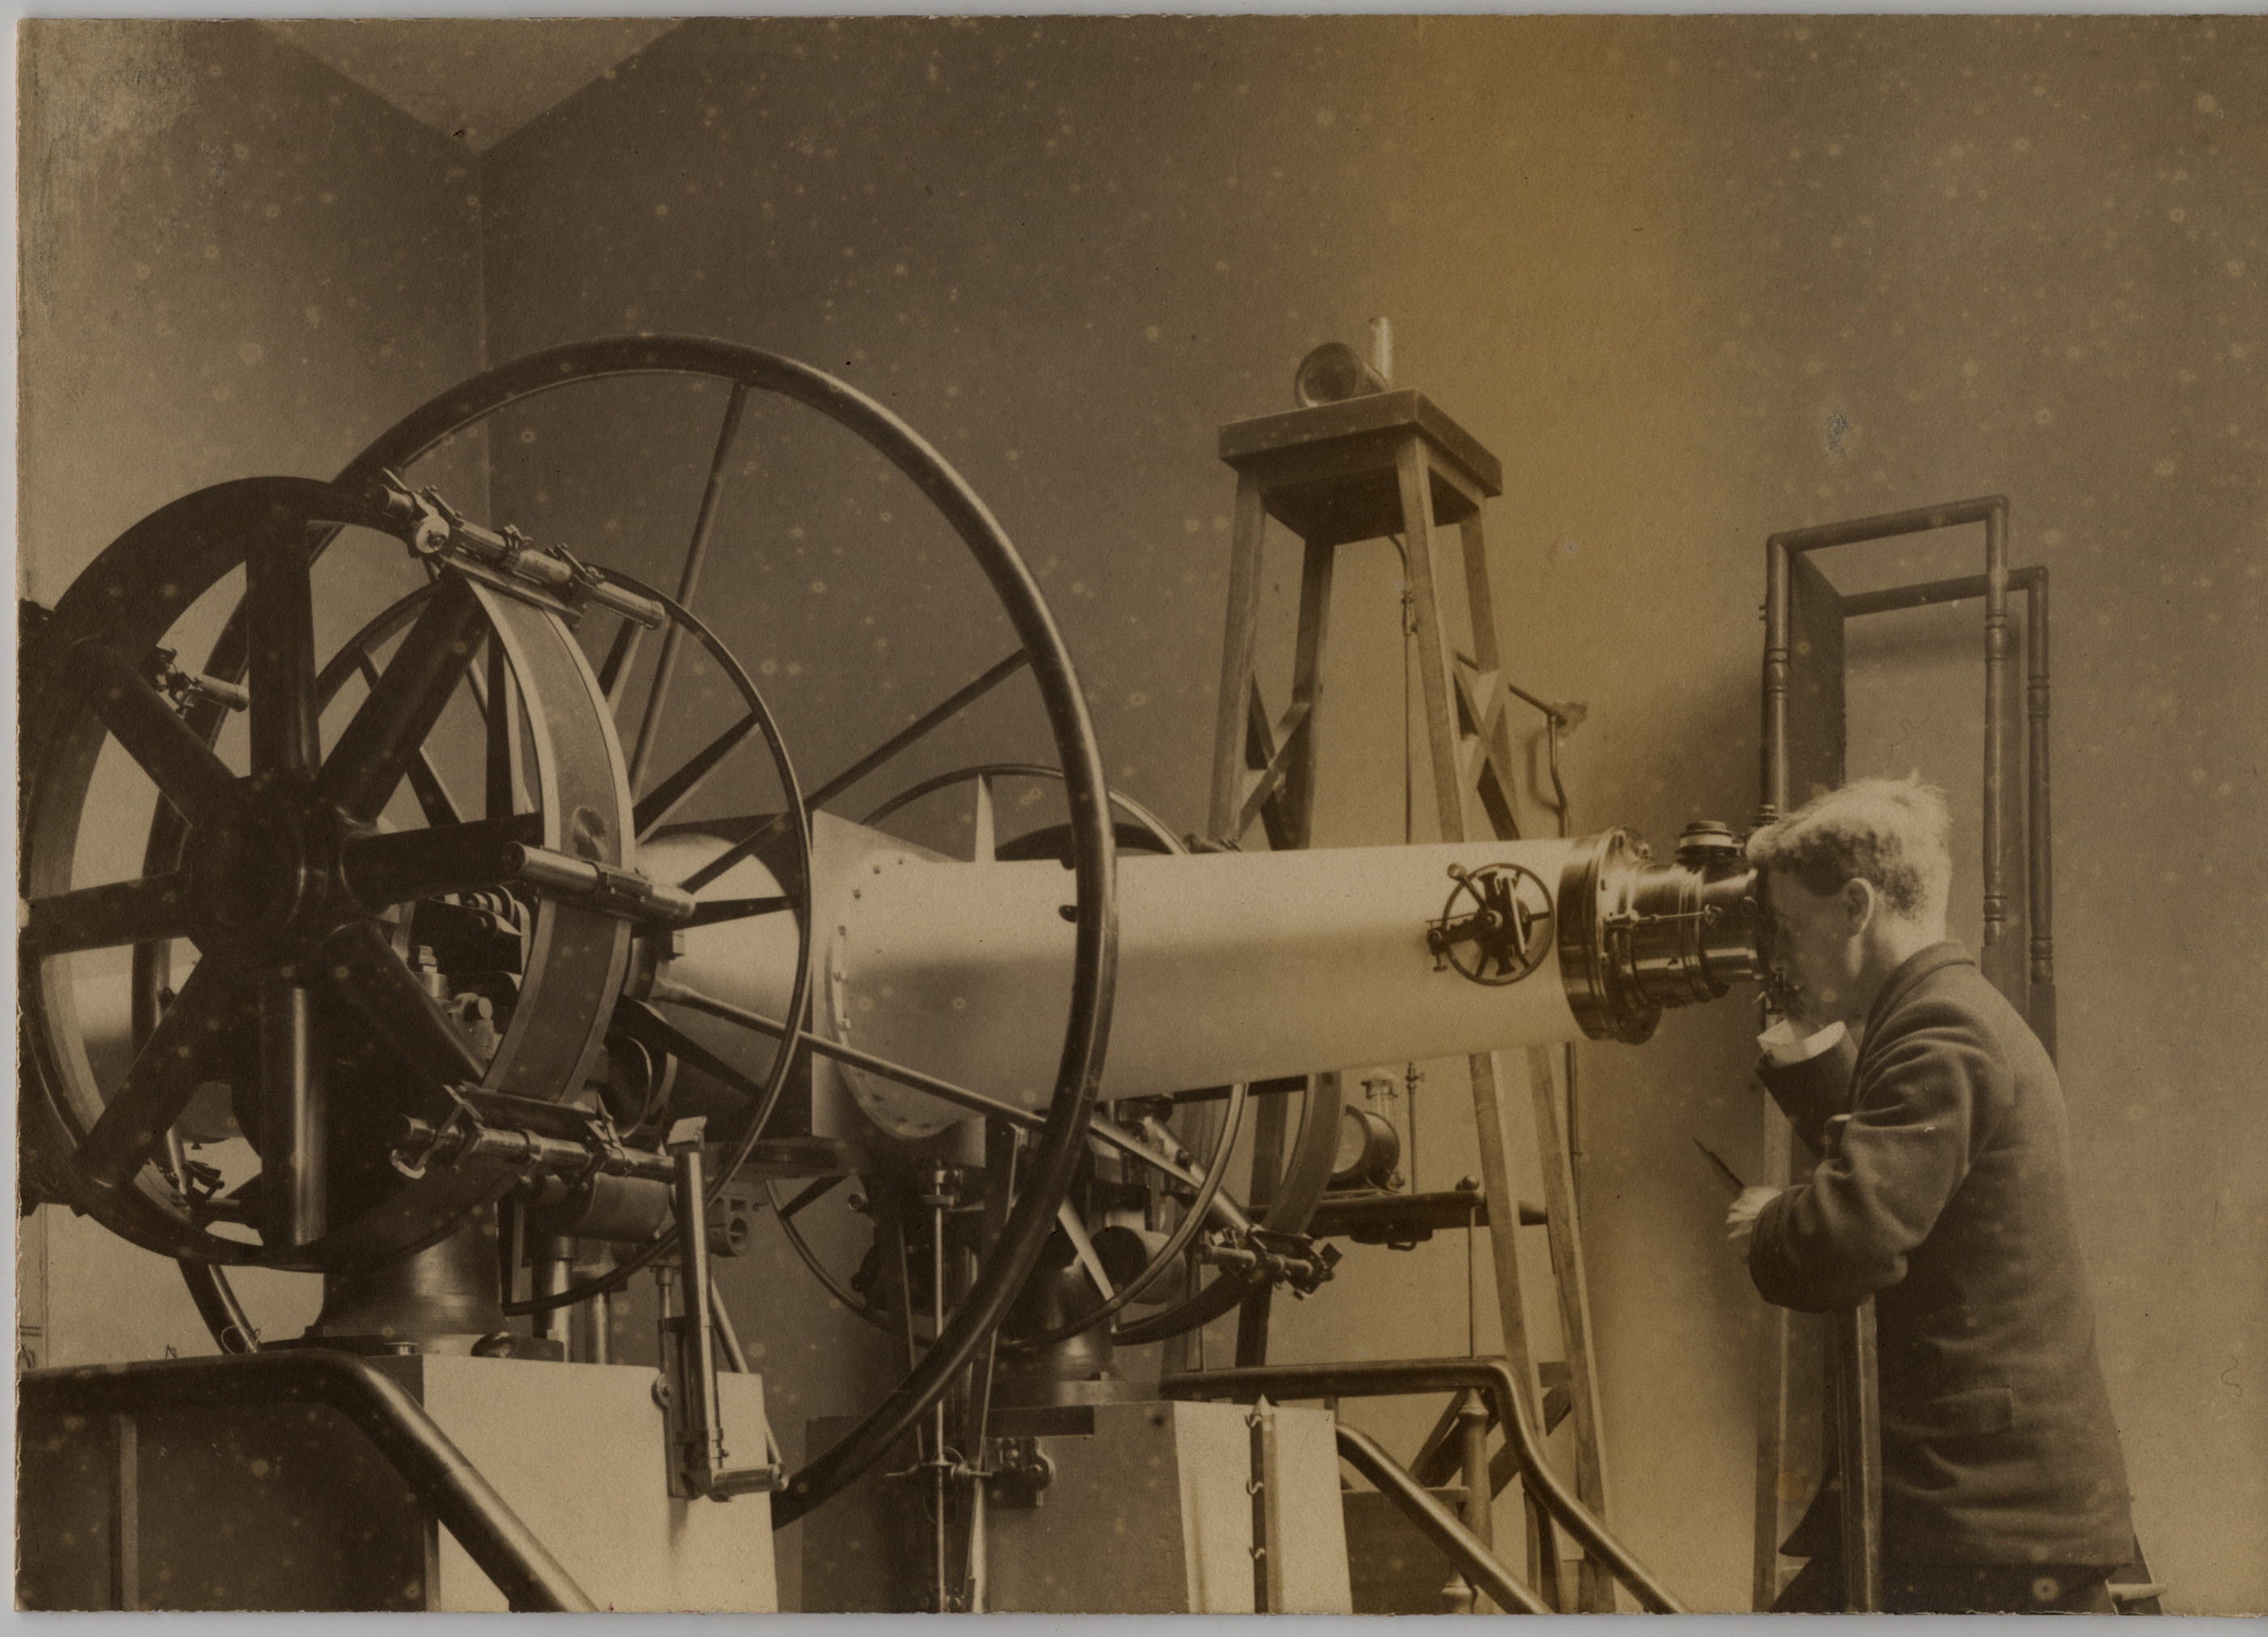 Des photos anciennes de télescopes